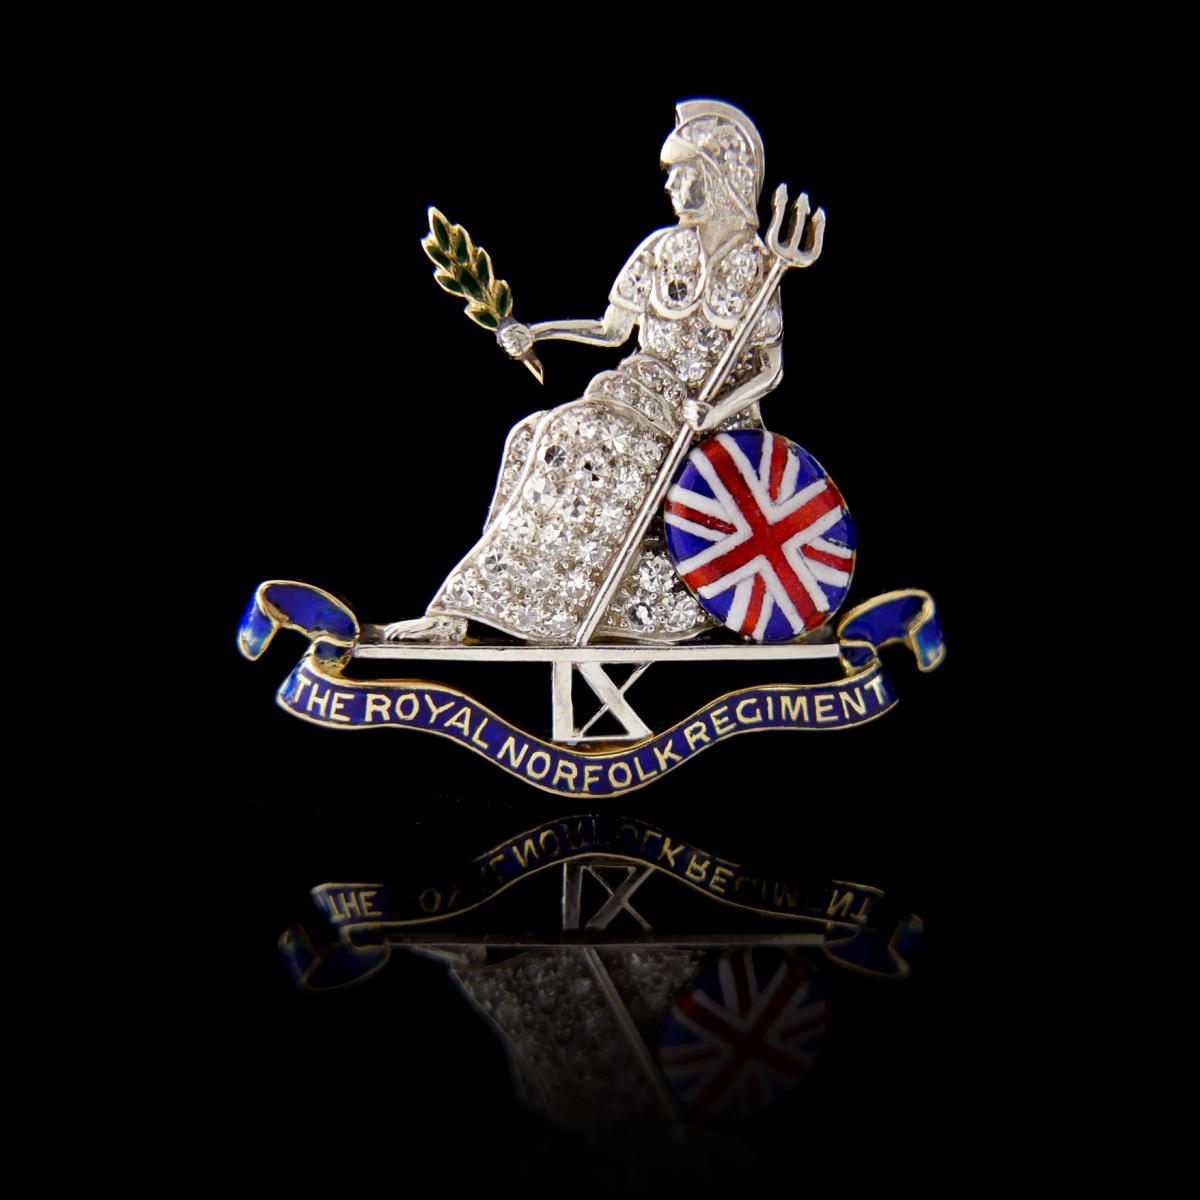 Royal Norfolk Regiment Brooch